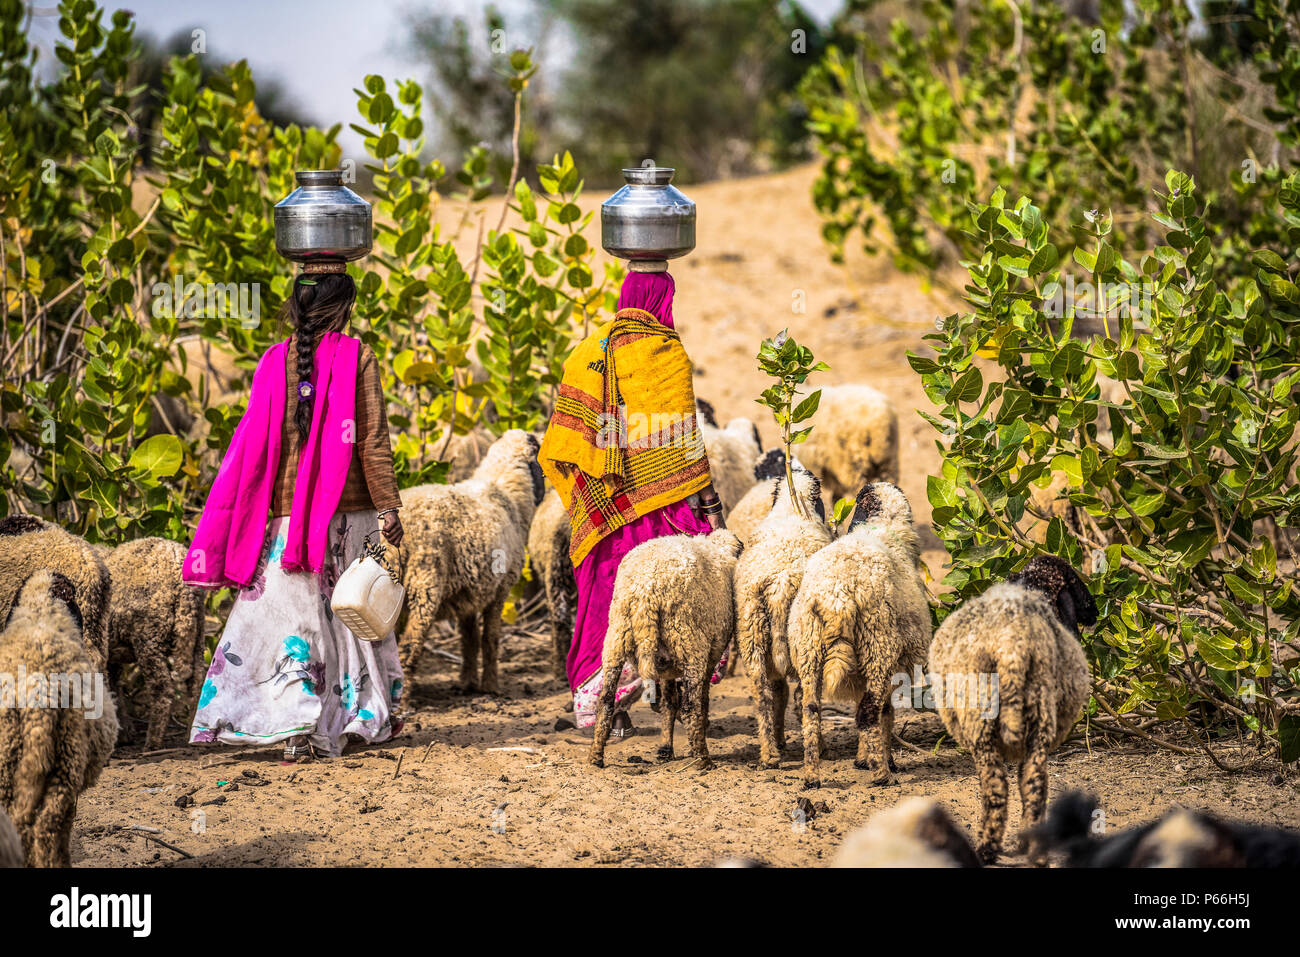 Inde Rajasthan désert de Thar les femmes à la collecte de l'eau du puits Banque D'Images